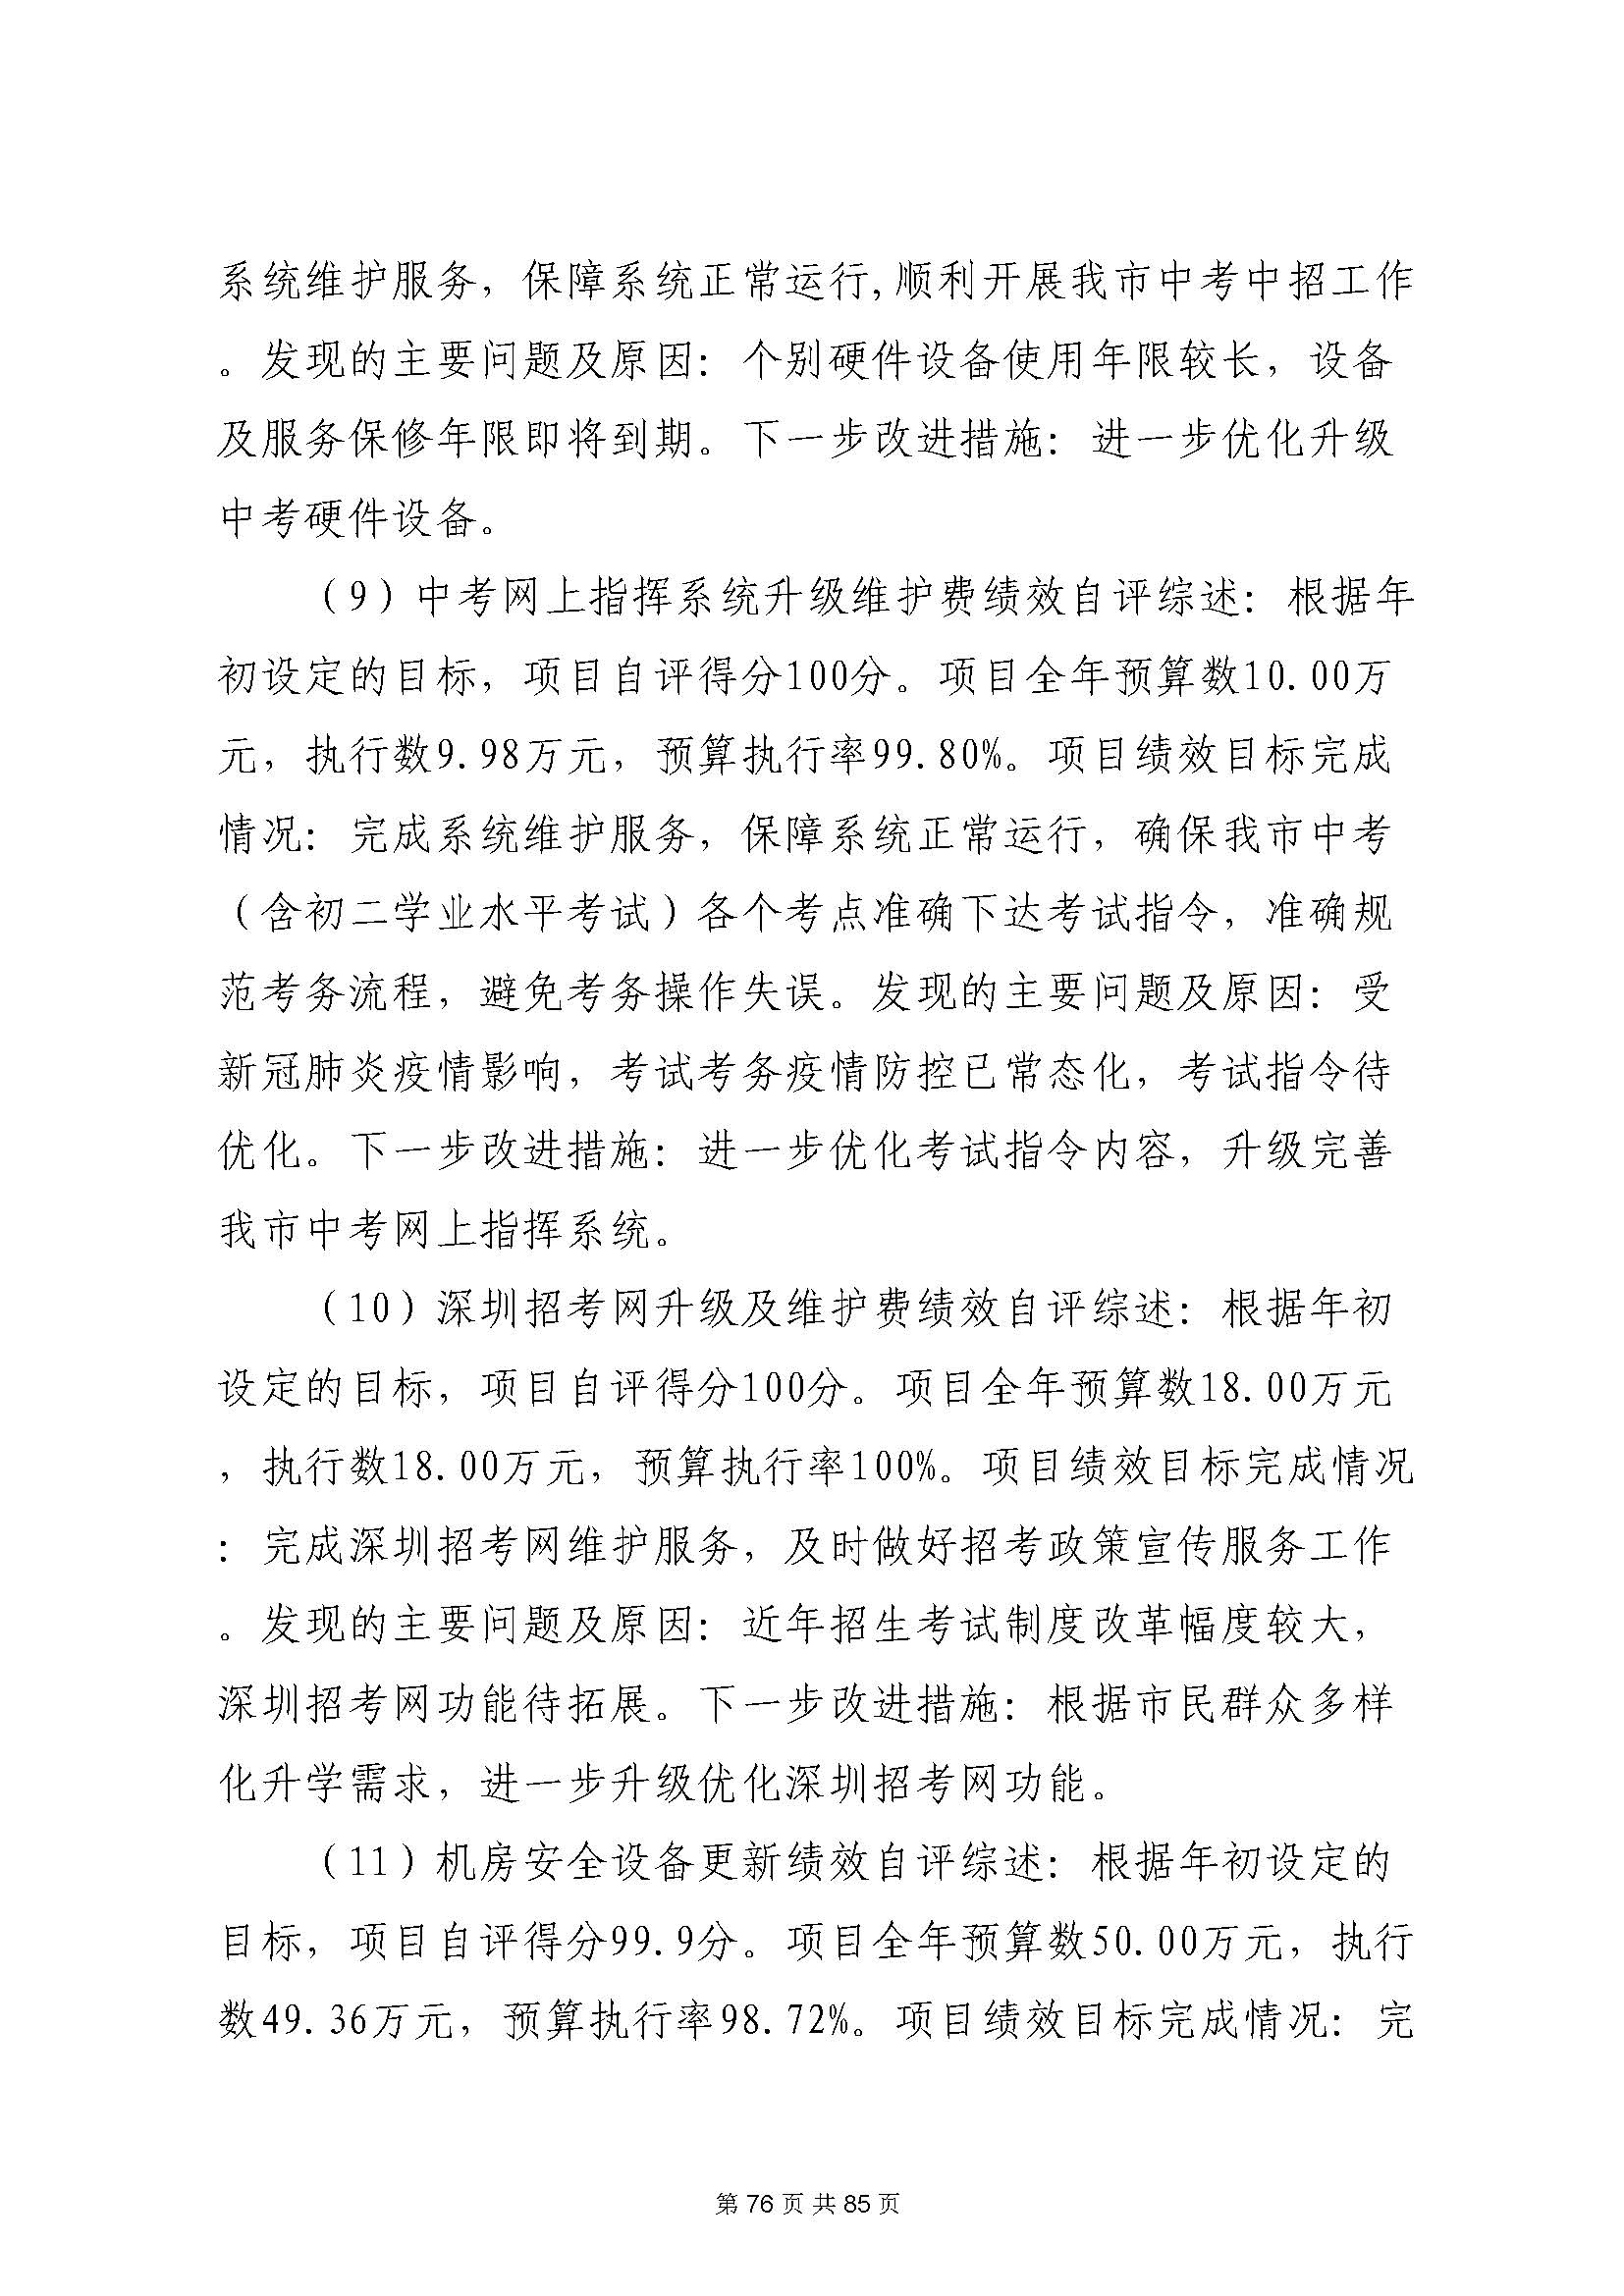 深圳市招生考试办公室2020年度部门决算_页面_77.jpg